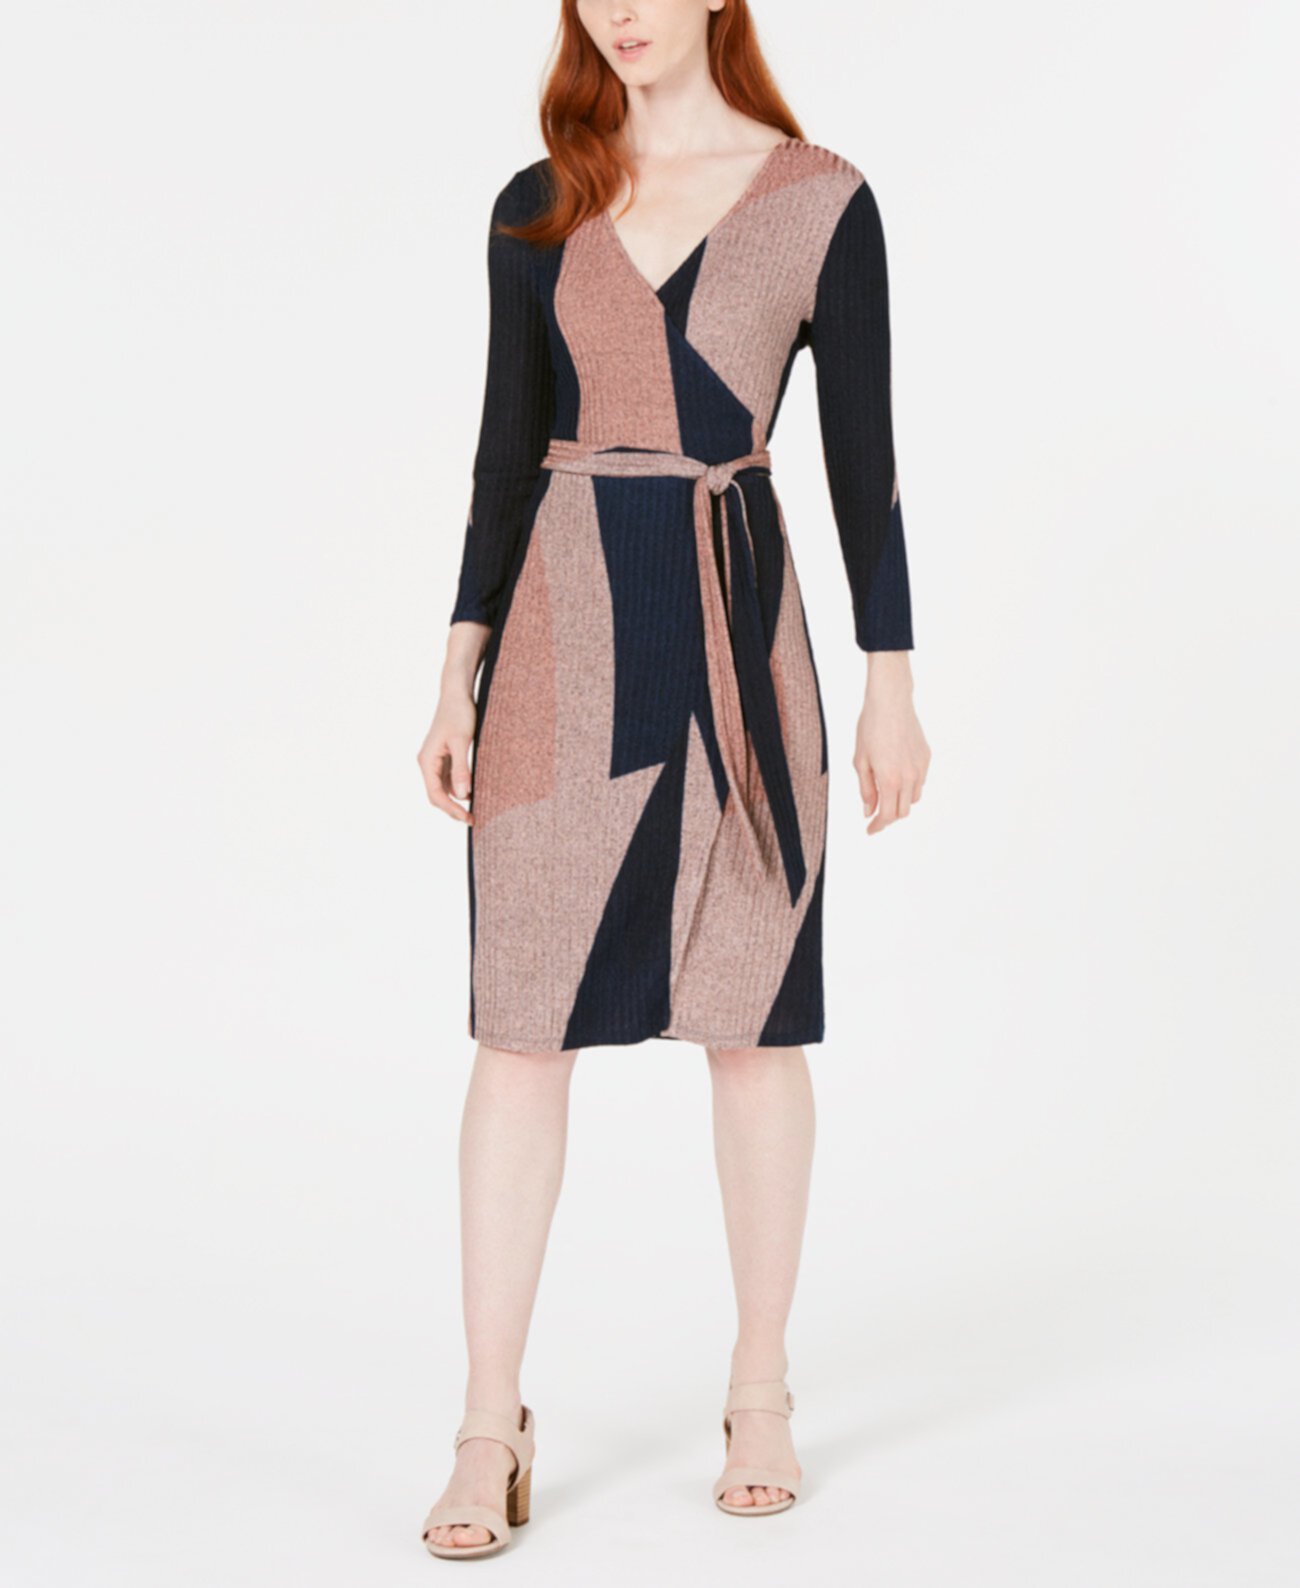 Платье с запахом из блестящего трикотажа с цветными блоками, созданное для Macy's Bar III